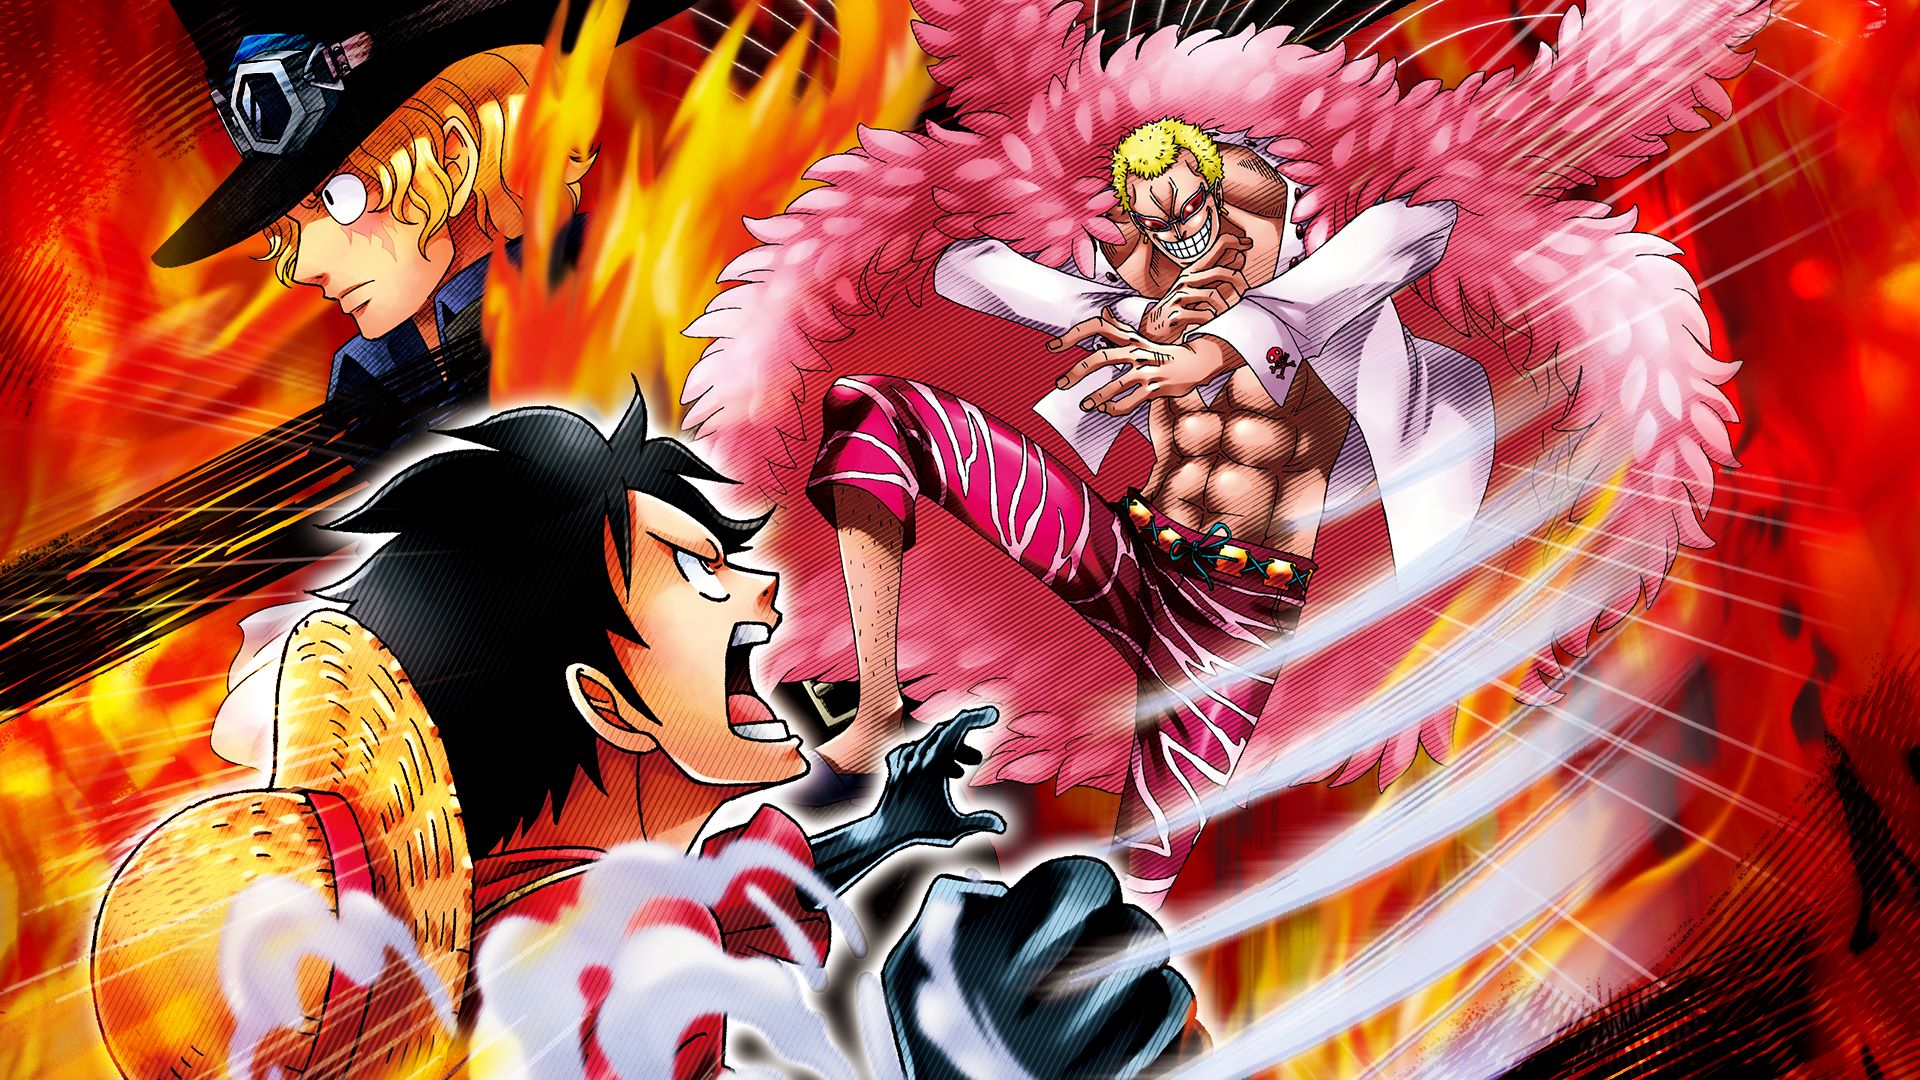 Descarga gratuita de fondo de pantalla para móvil de Animado, One Piece, Monkey D Luffy, Donquijote Doflamingo, Sabo (Una Pieza).